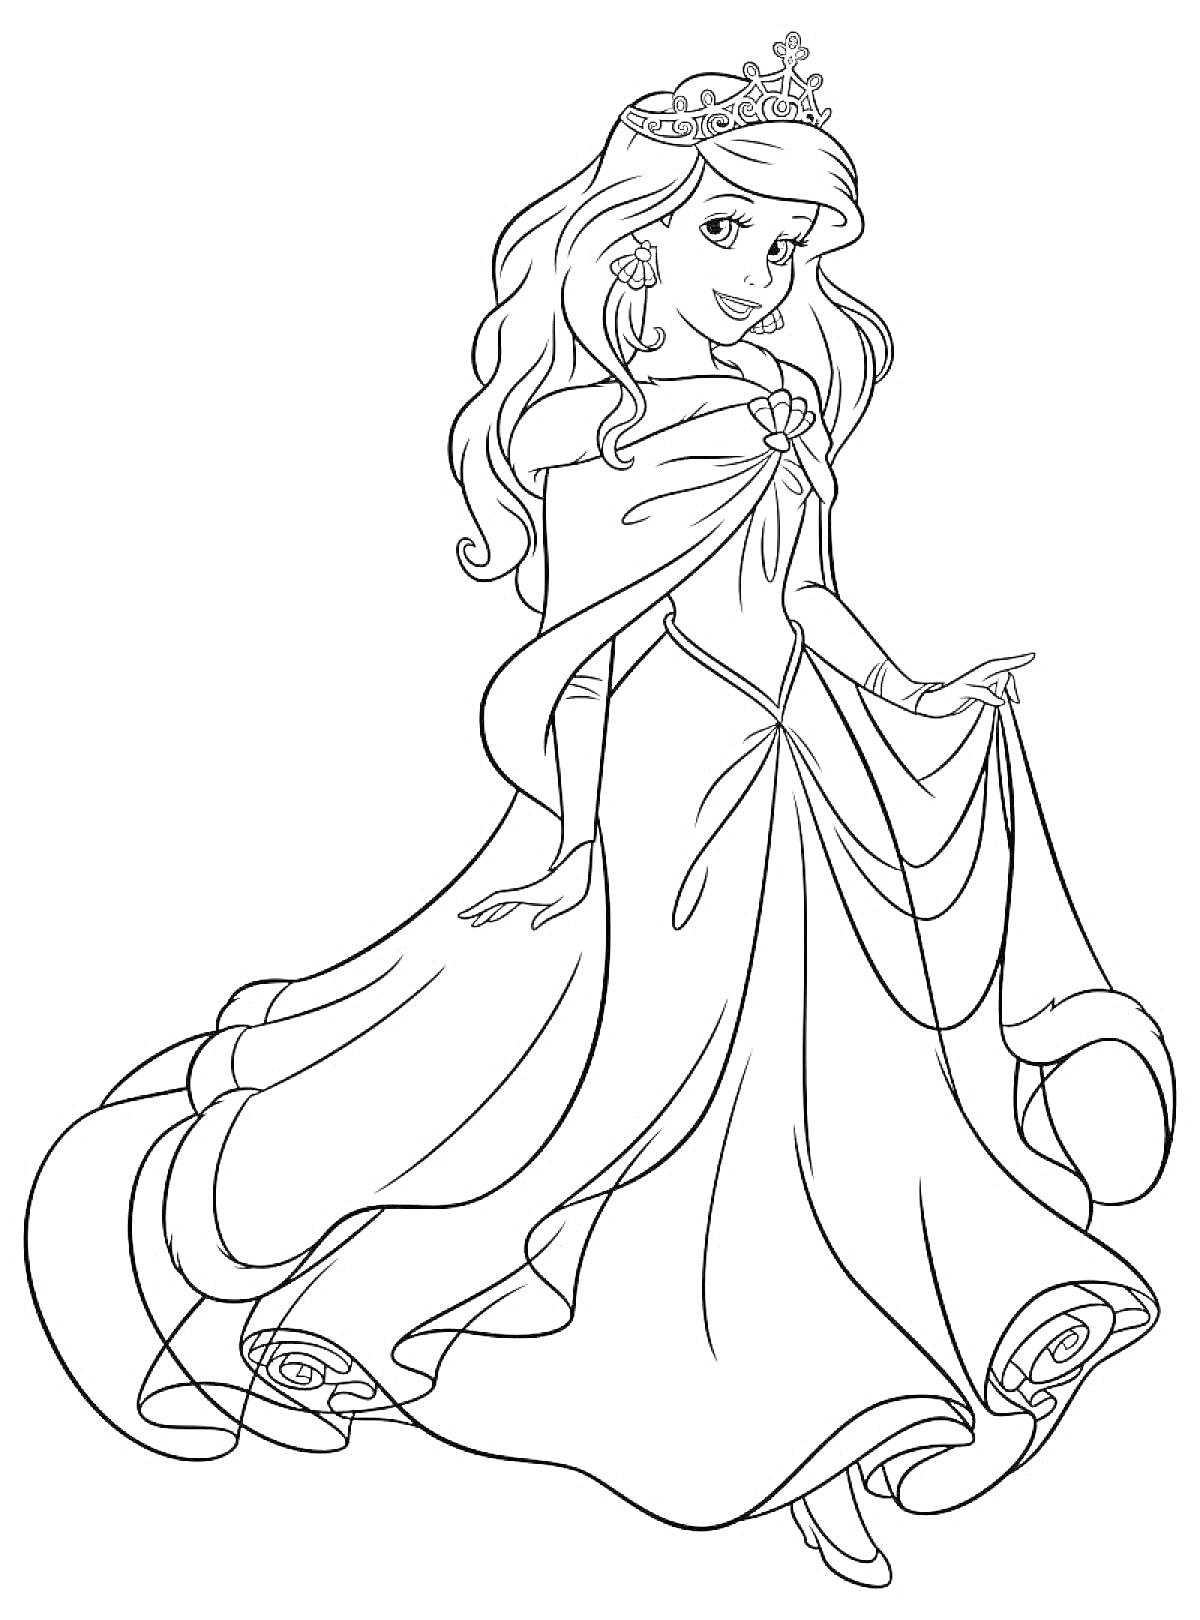 Принцесса в пышном платье с короной и длинными волосами